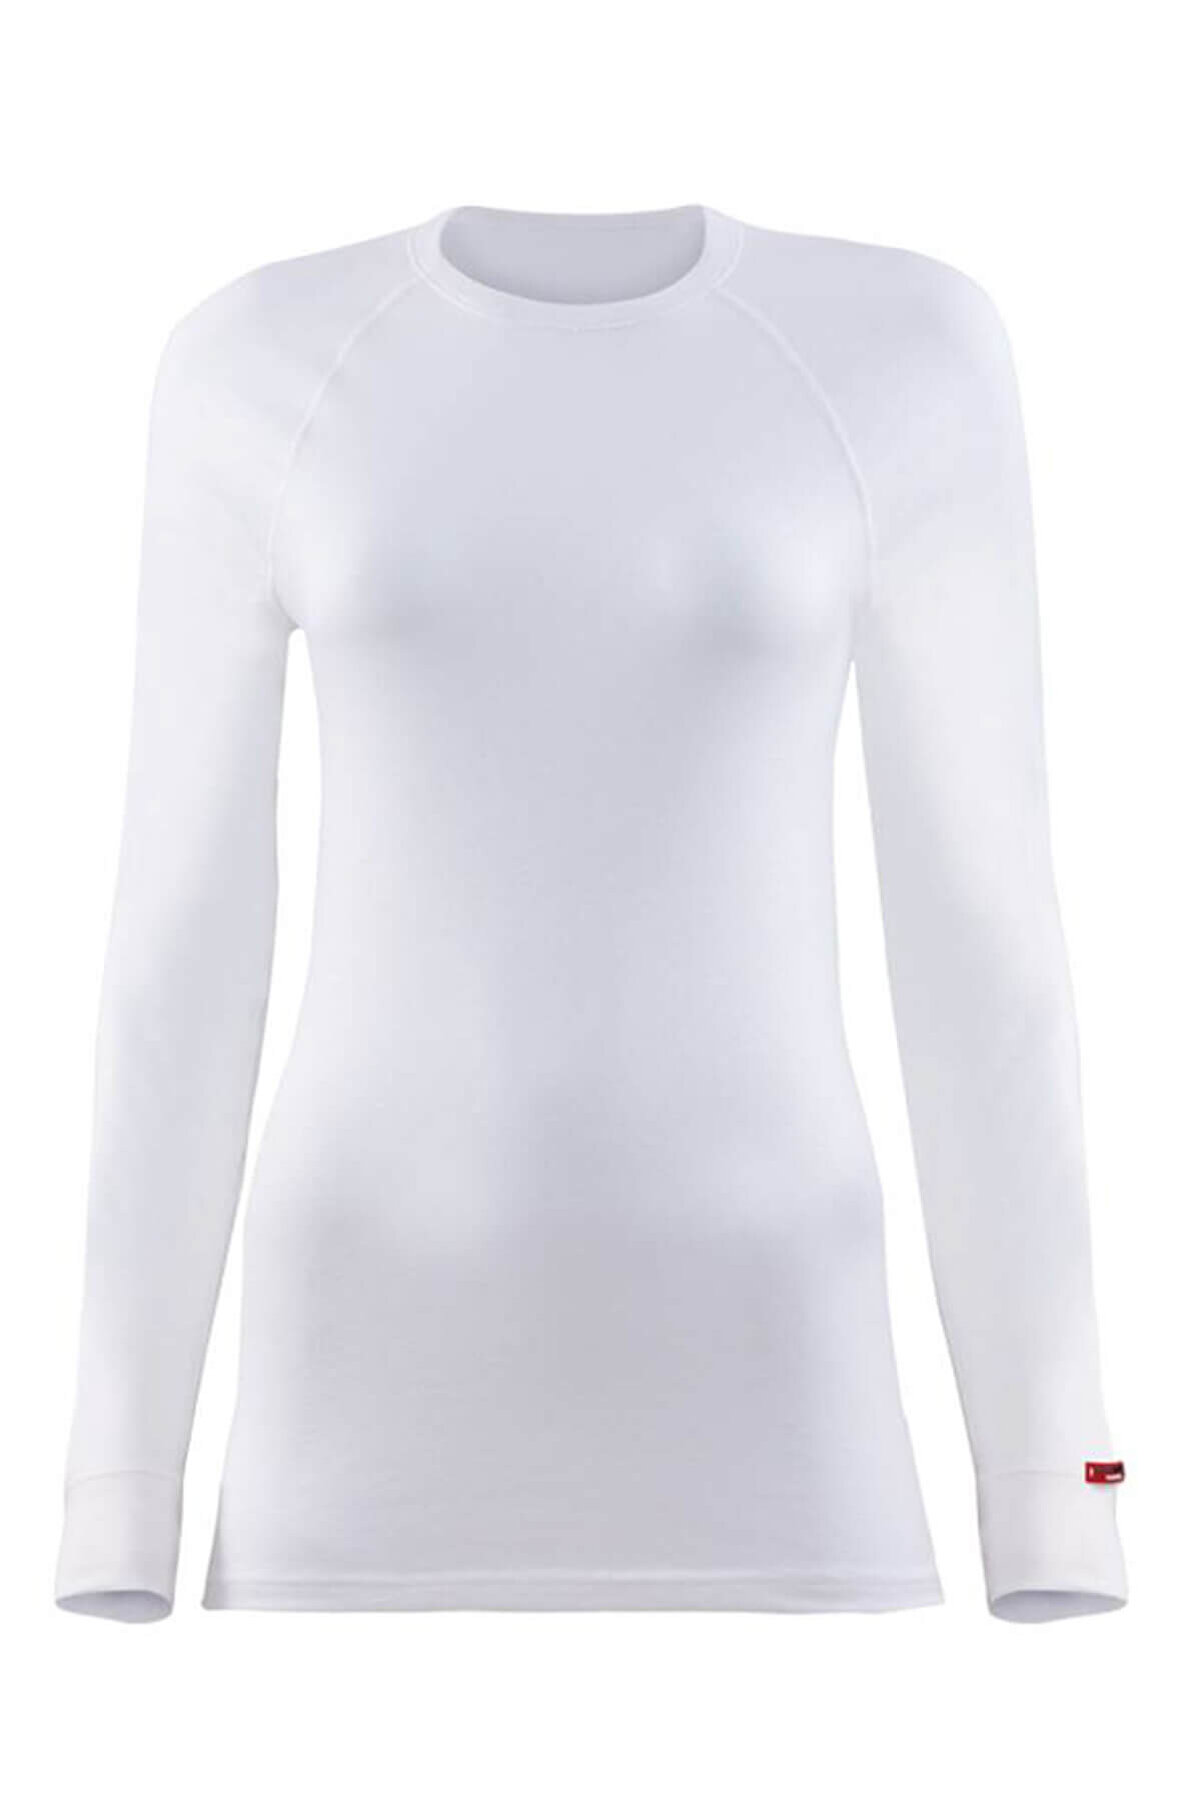 Blackspade Kadın Kar Beyaz 2. Seviye Termal  T-Shirt 9259